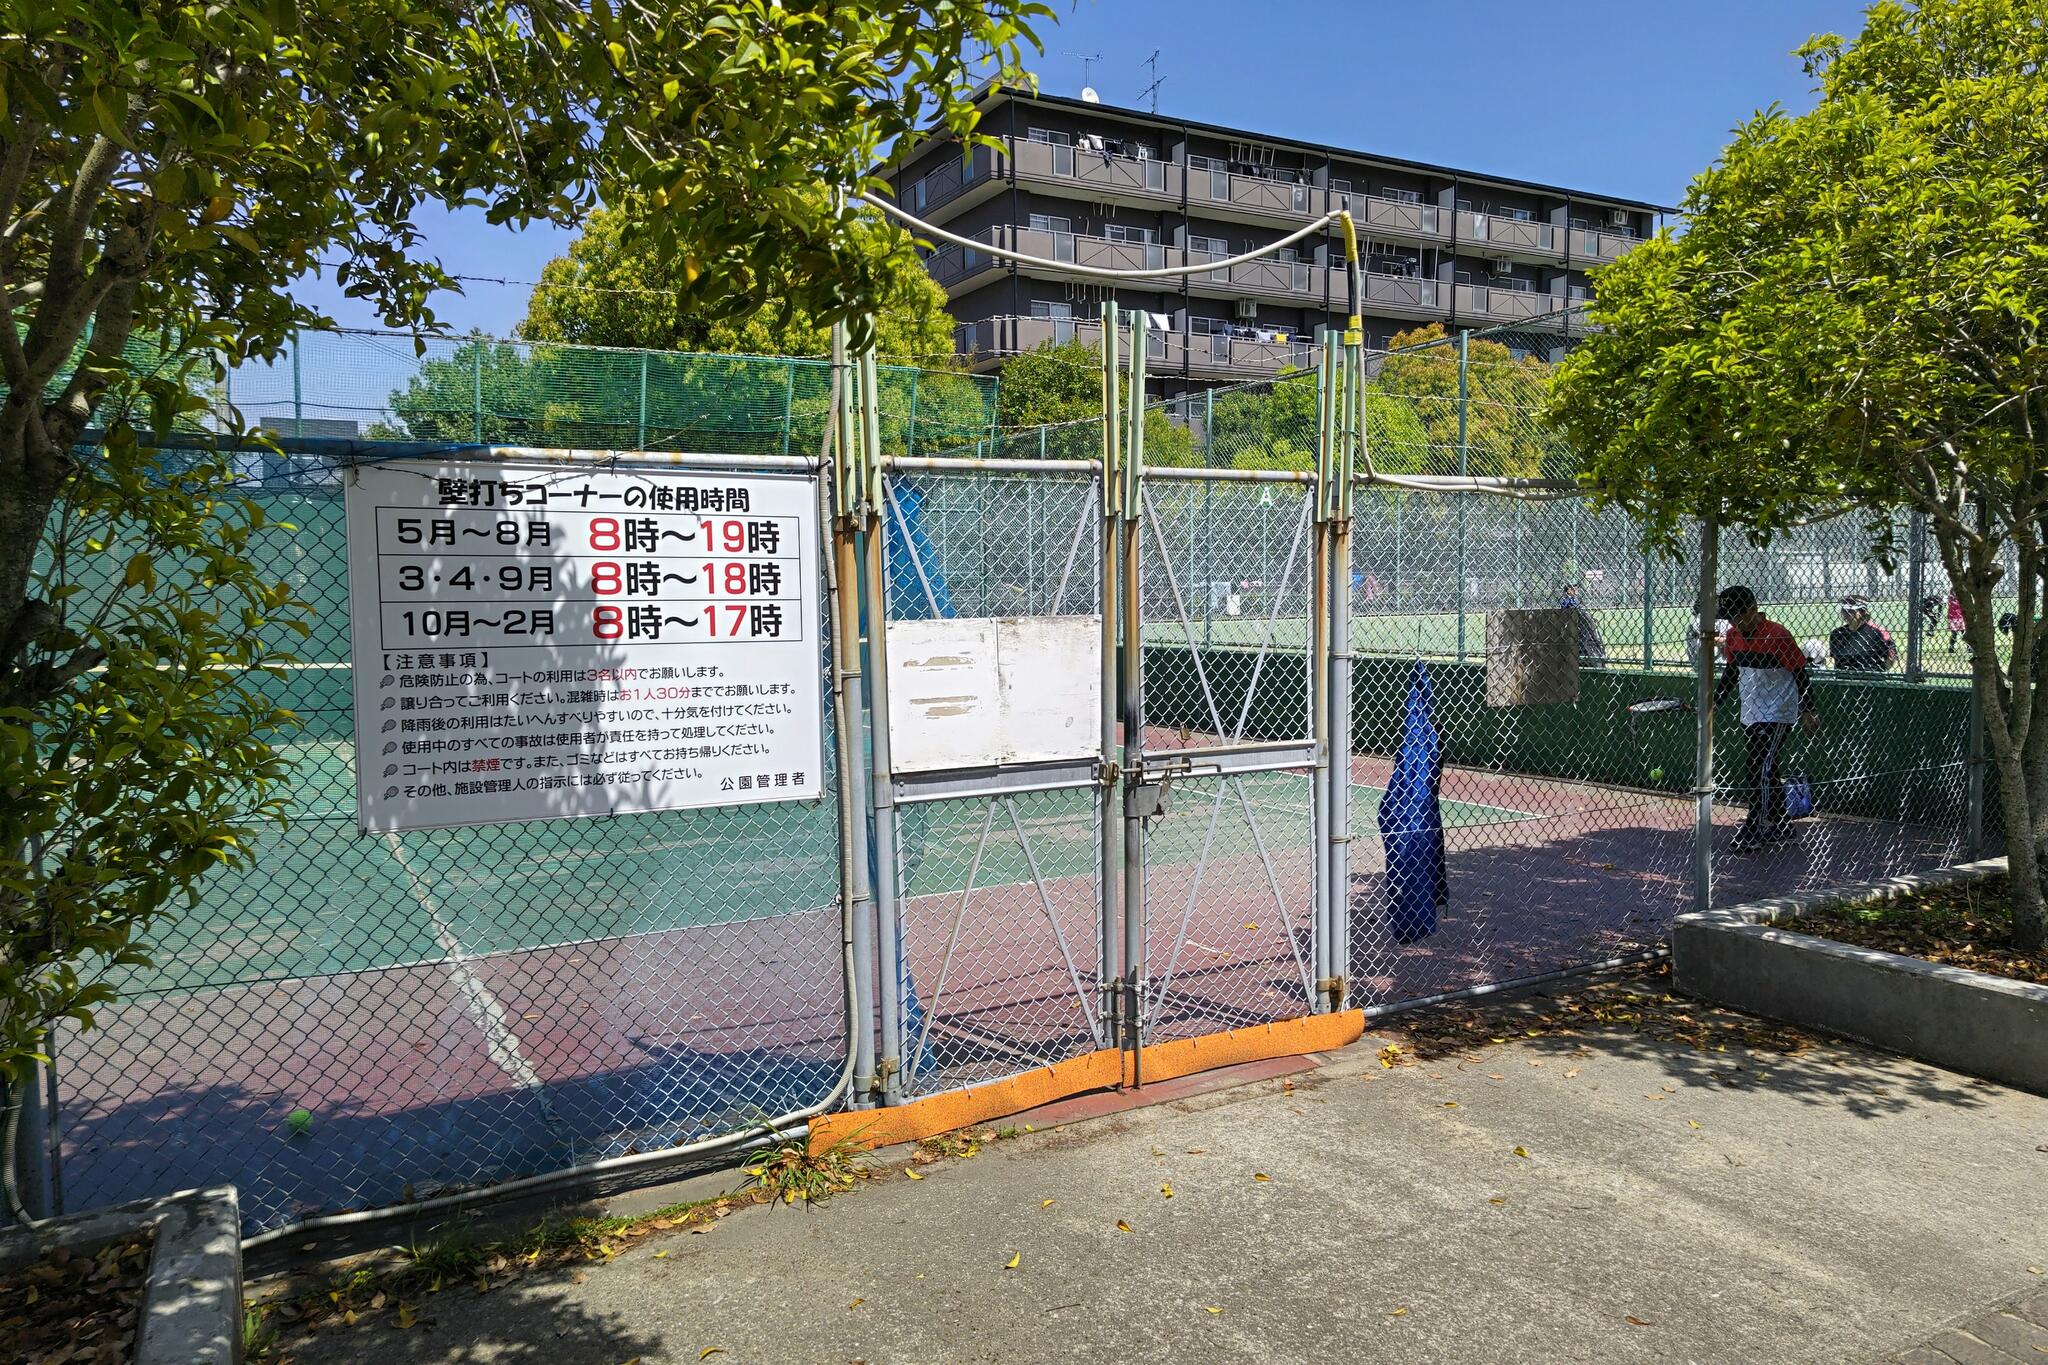 中央公園テニスコート - 岸和田市西之内町/テニスコート | Yahoo!マップ